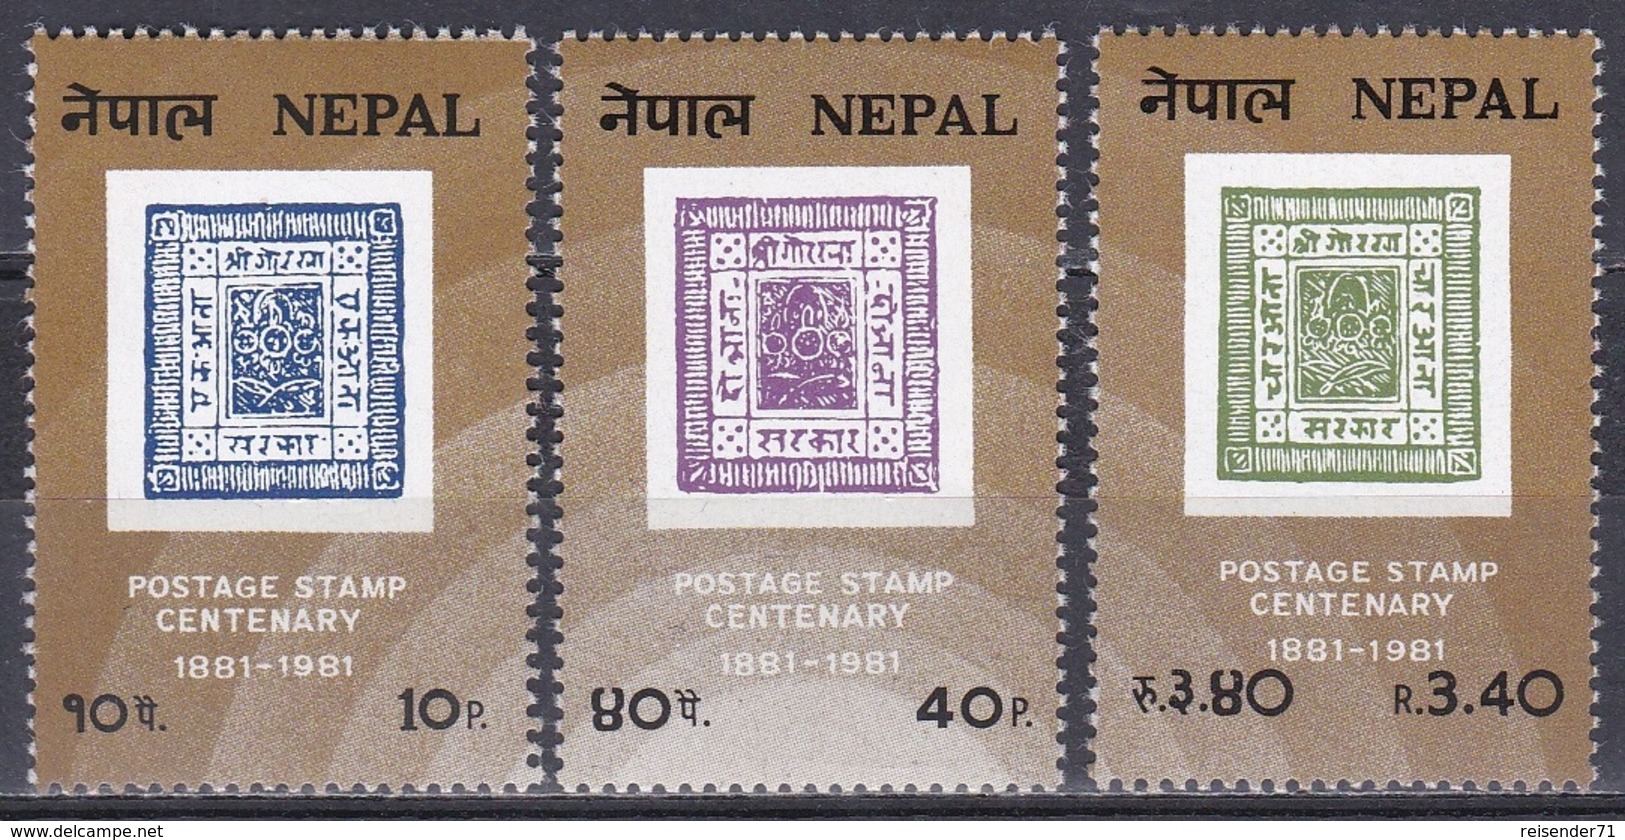 Nepal 1981 Geschichte Post Postwesen Philatelie Philately Briefmarken Stamps  Stamp Anniversary Jubilee, Mi. 408-0 ** - Nepal